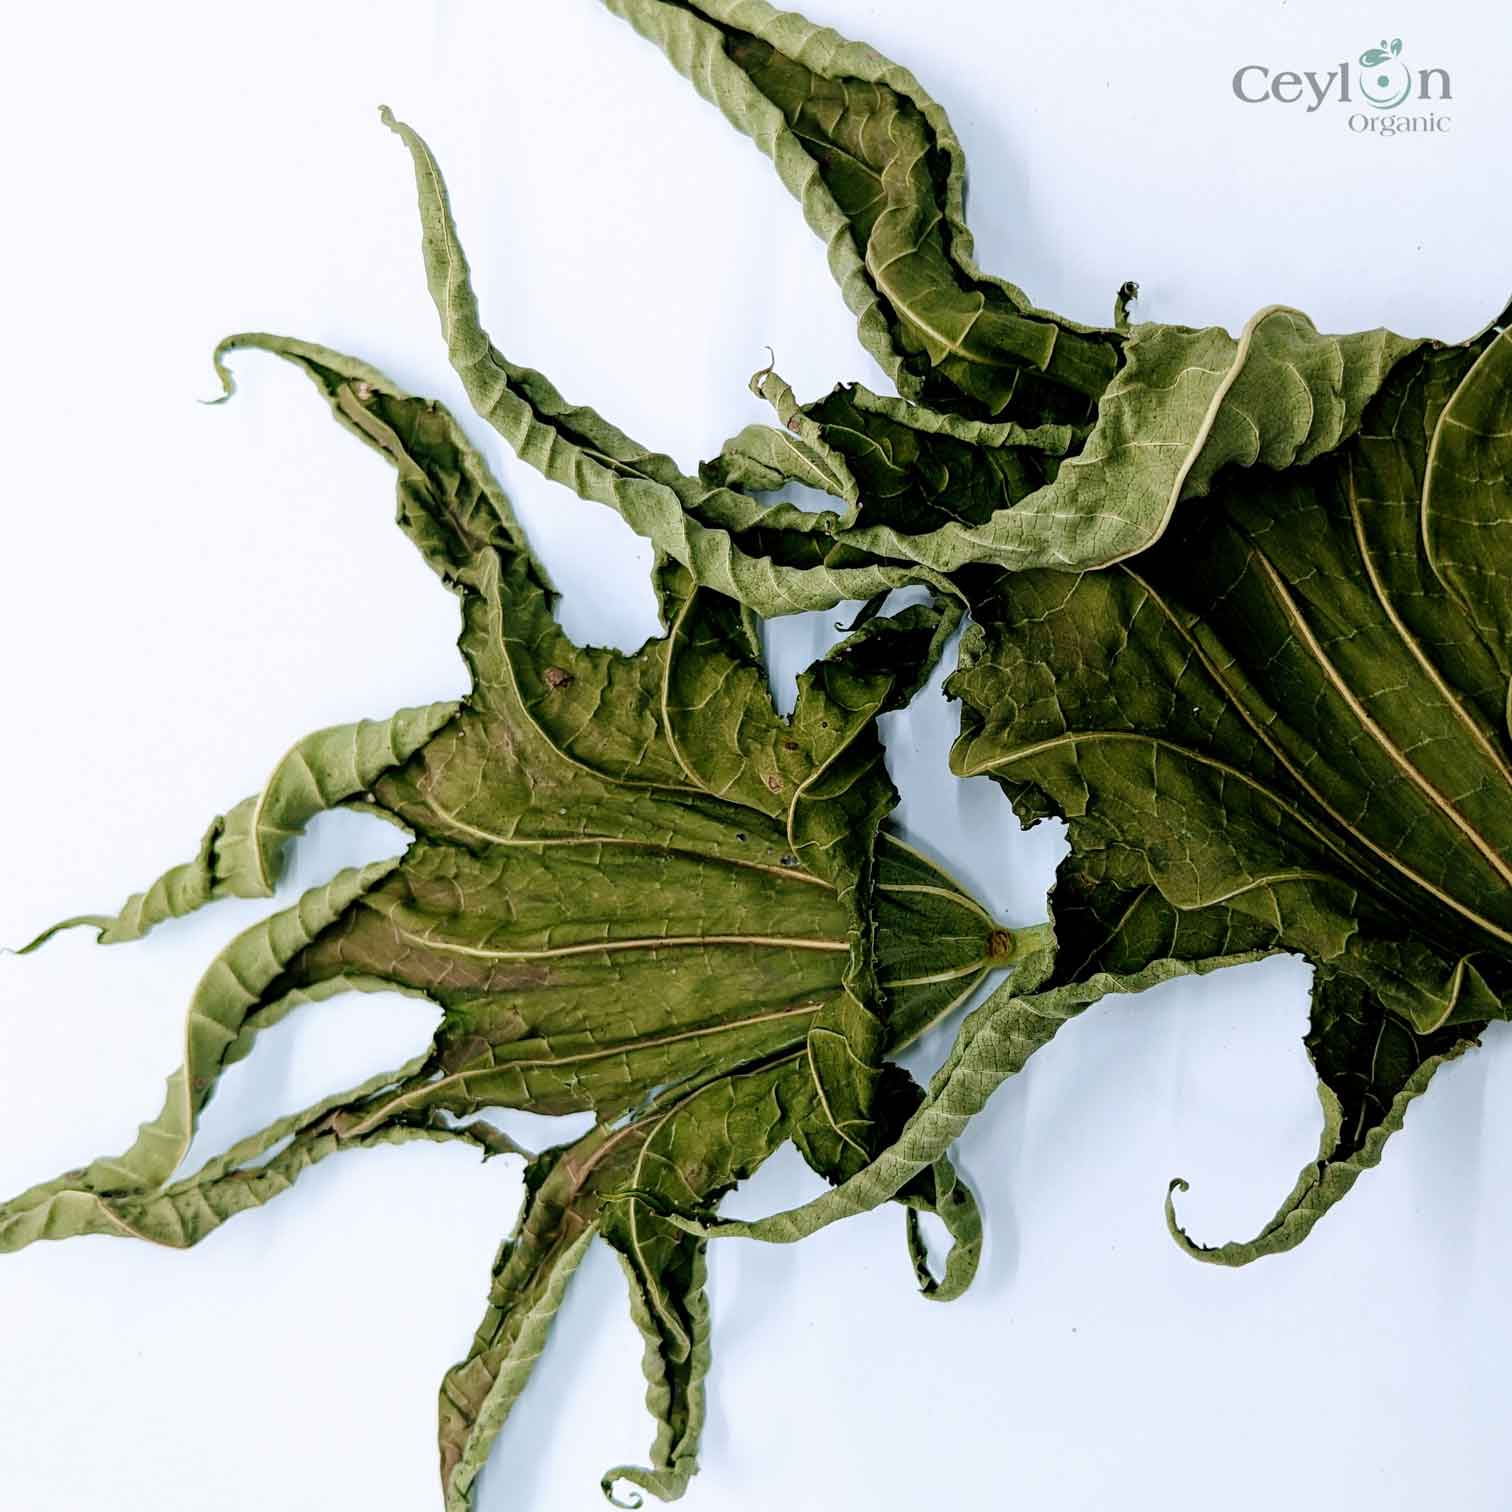 200+ Castor Leaves, Dried Castor Leaves, Castorbean, Castor oil plant leaves | Ceylon Organic-2